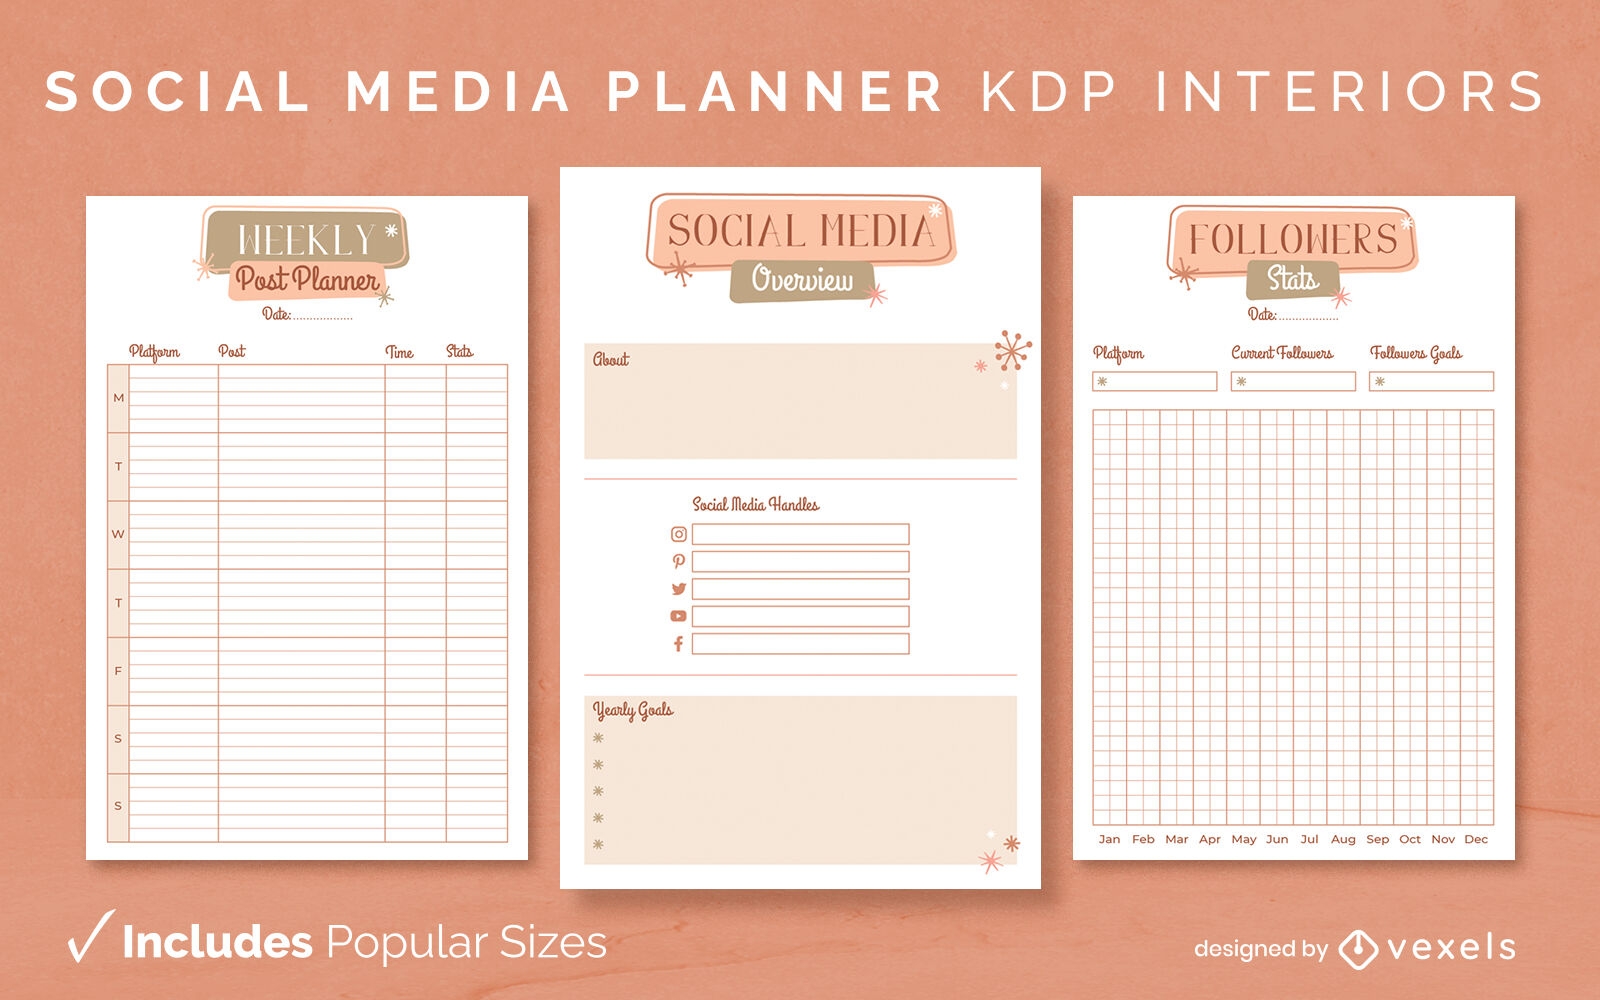 Plantilla de diario de planificador de redes sociales Diseño de interiores KDP